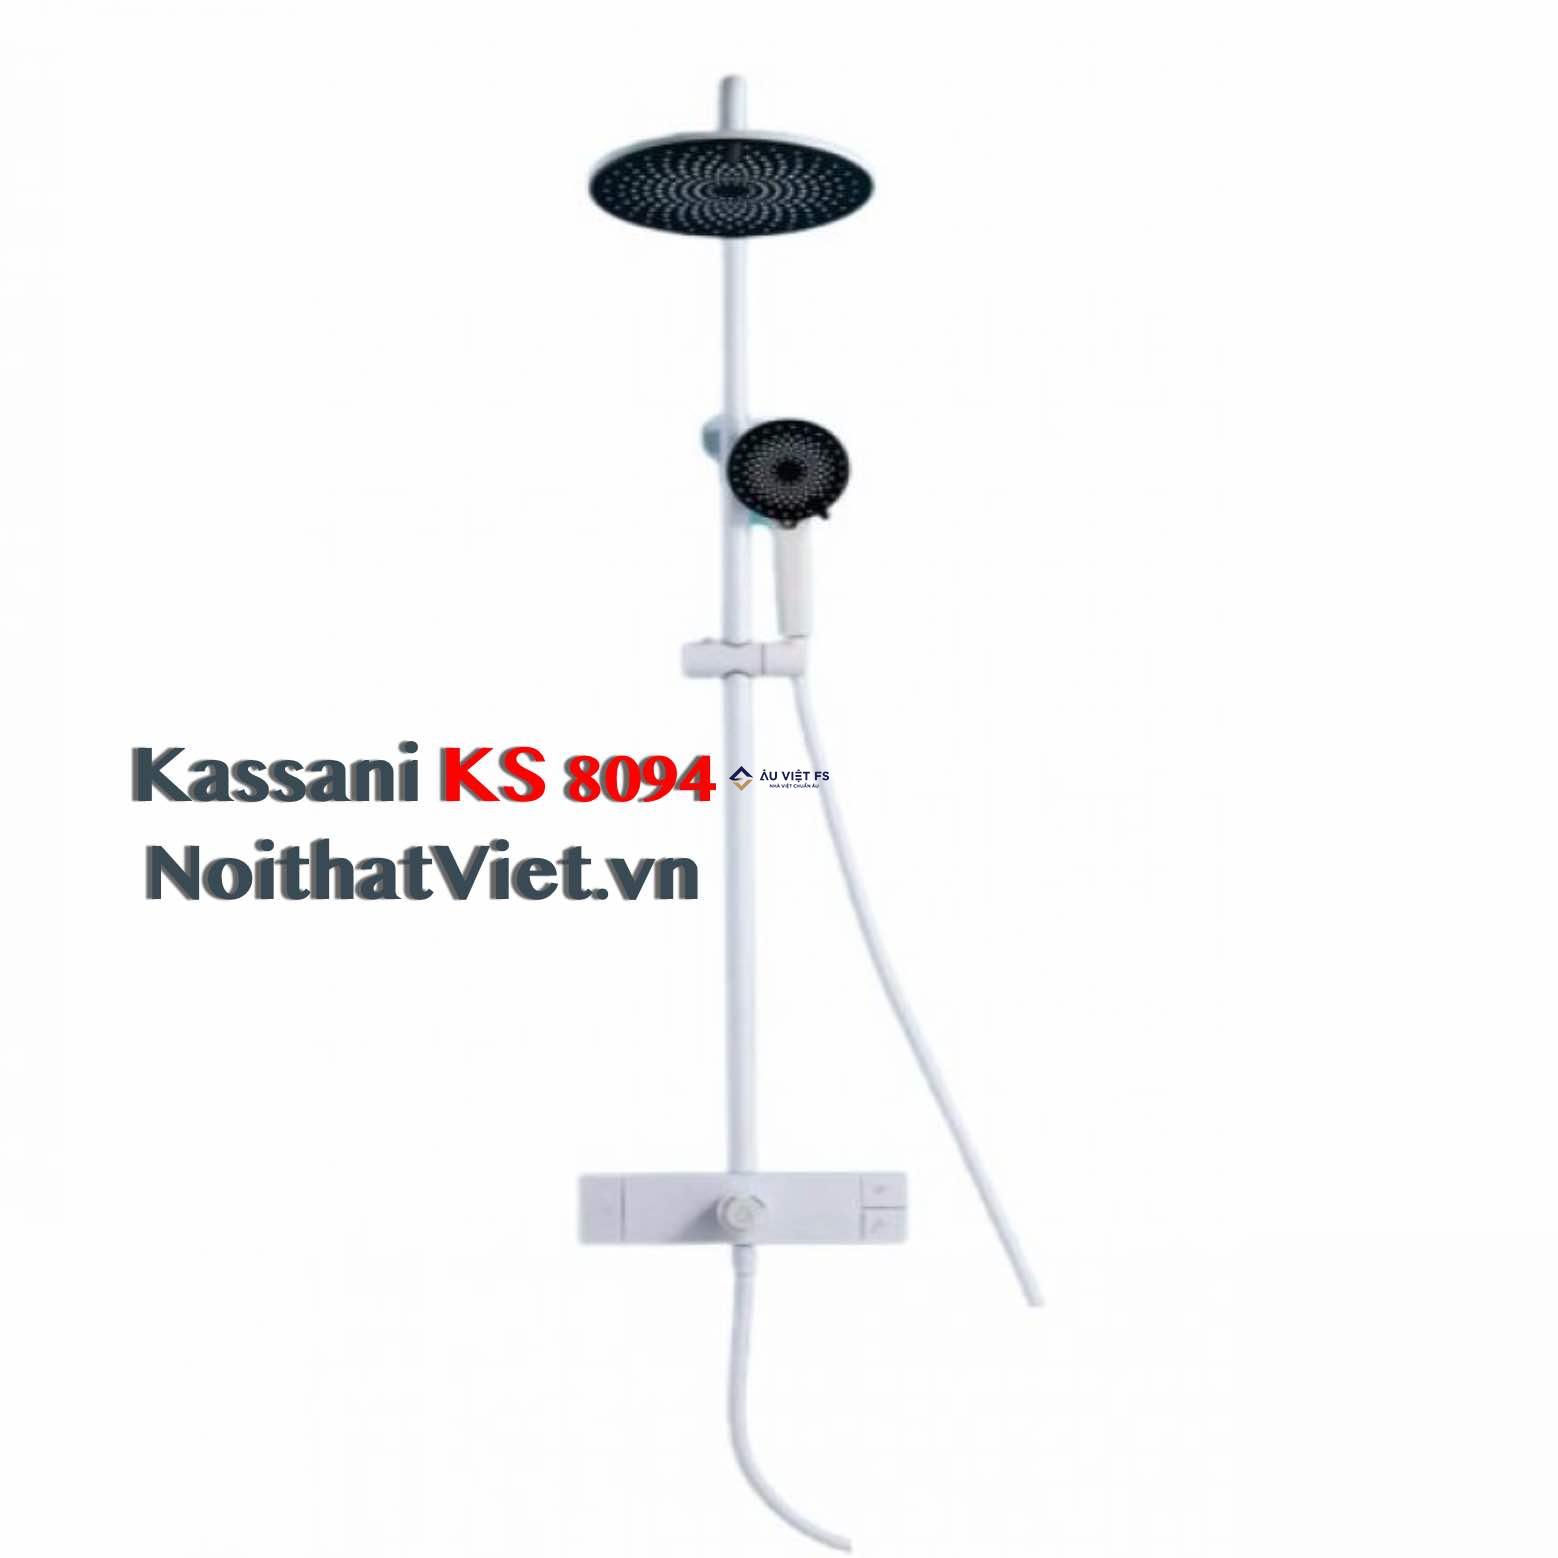 Kassani KS 8094, Kassani, Sen tắm Kassani, Sen cây Kassani, Giá Kassani, Sen tắm nóng lạnh, Sen cây cao cấp